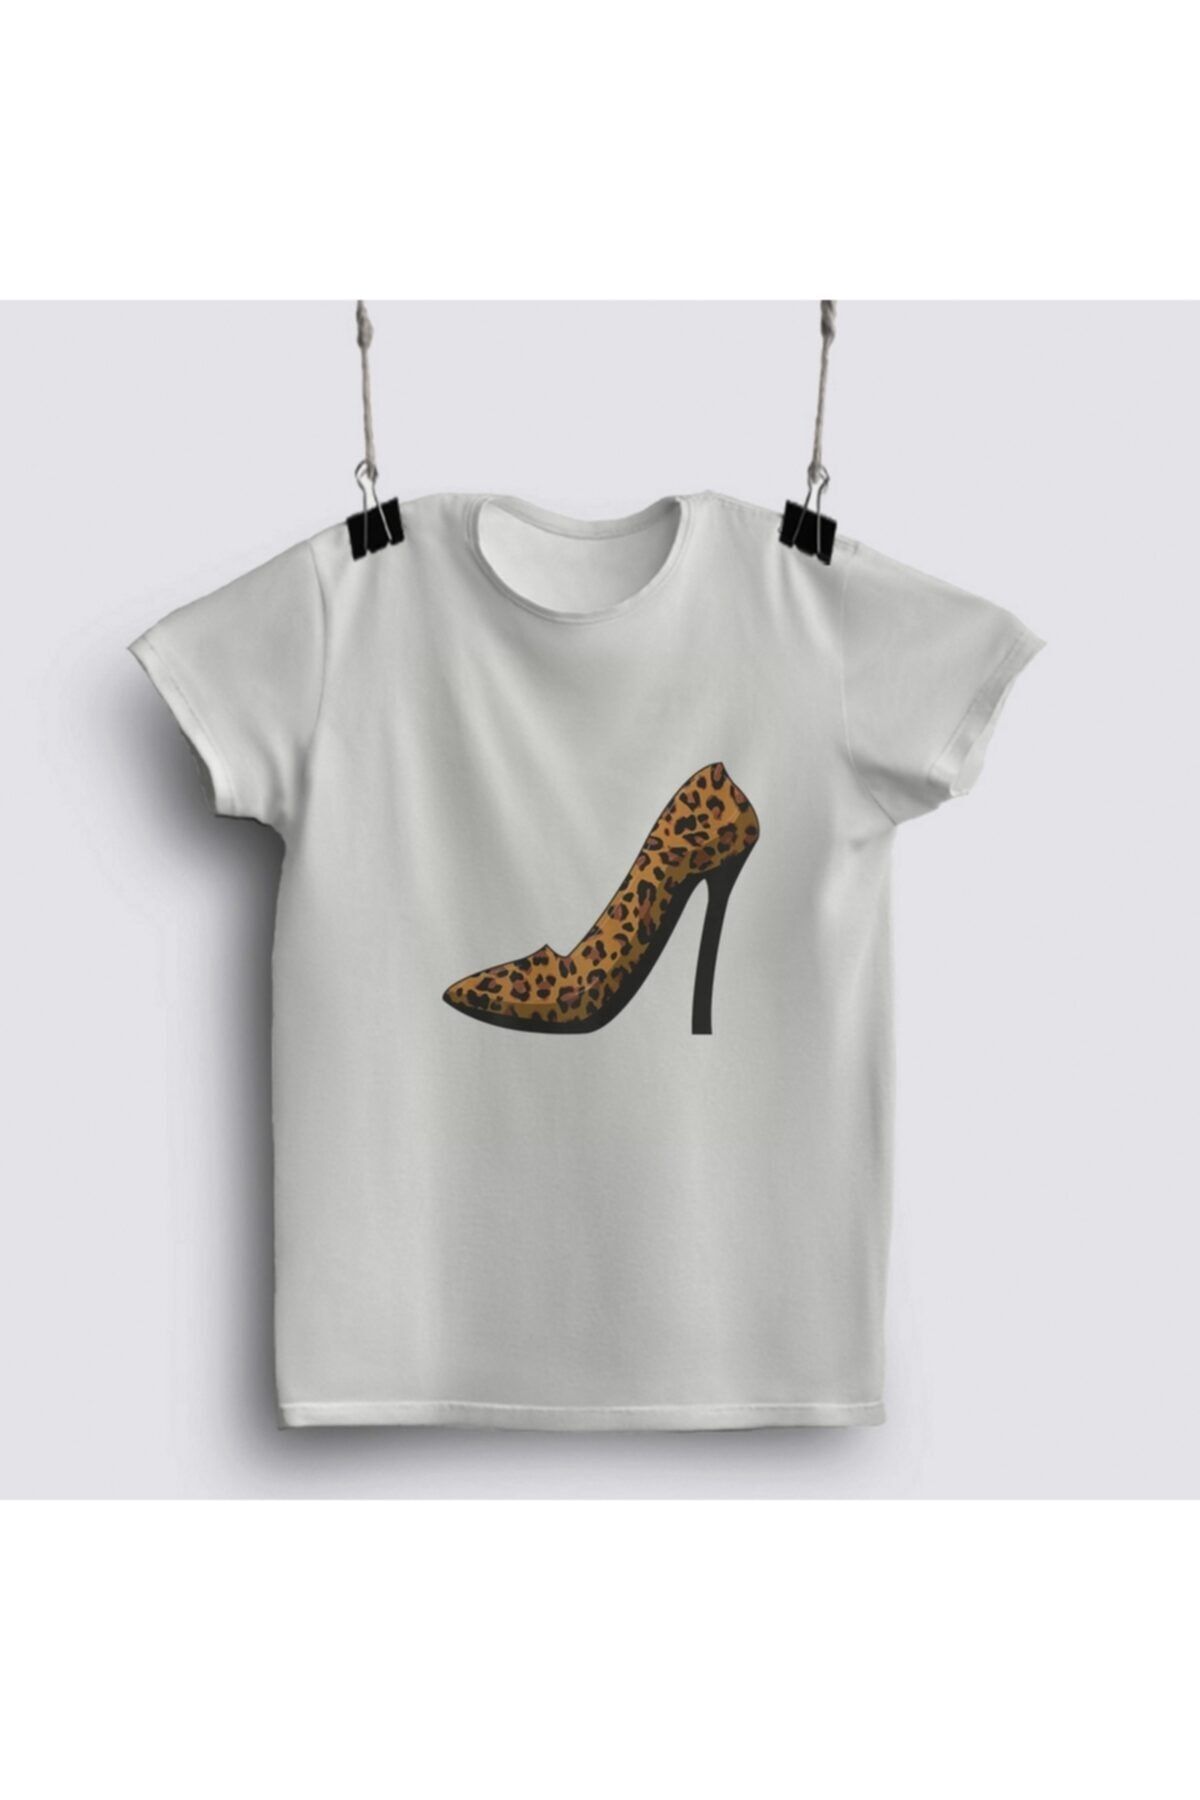 Fizello Womens Cheetah Leopard Pattern High Heels Stiletto T-shirt